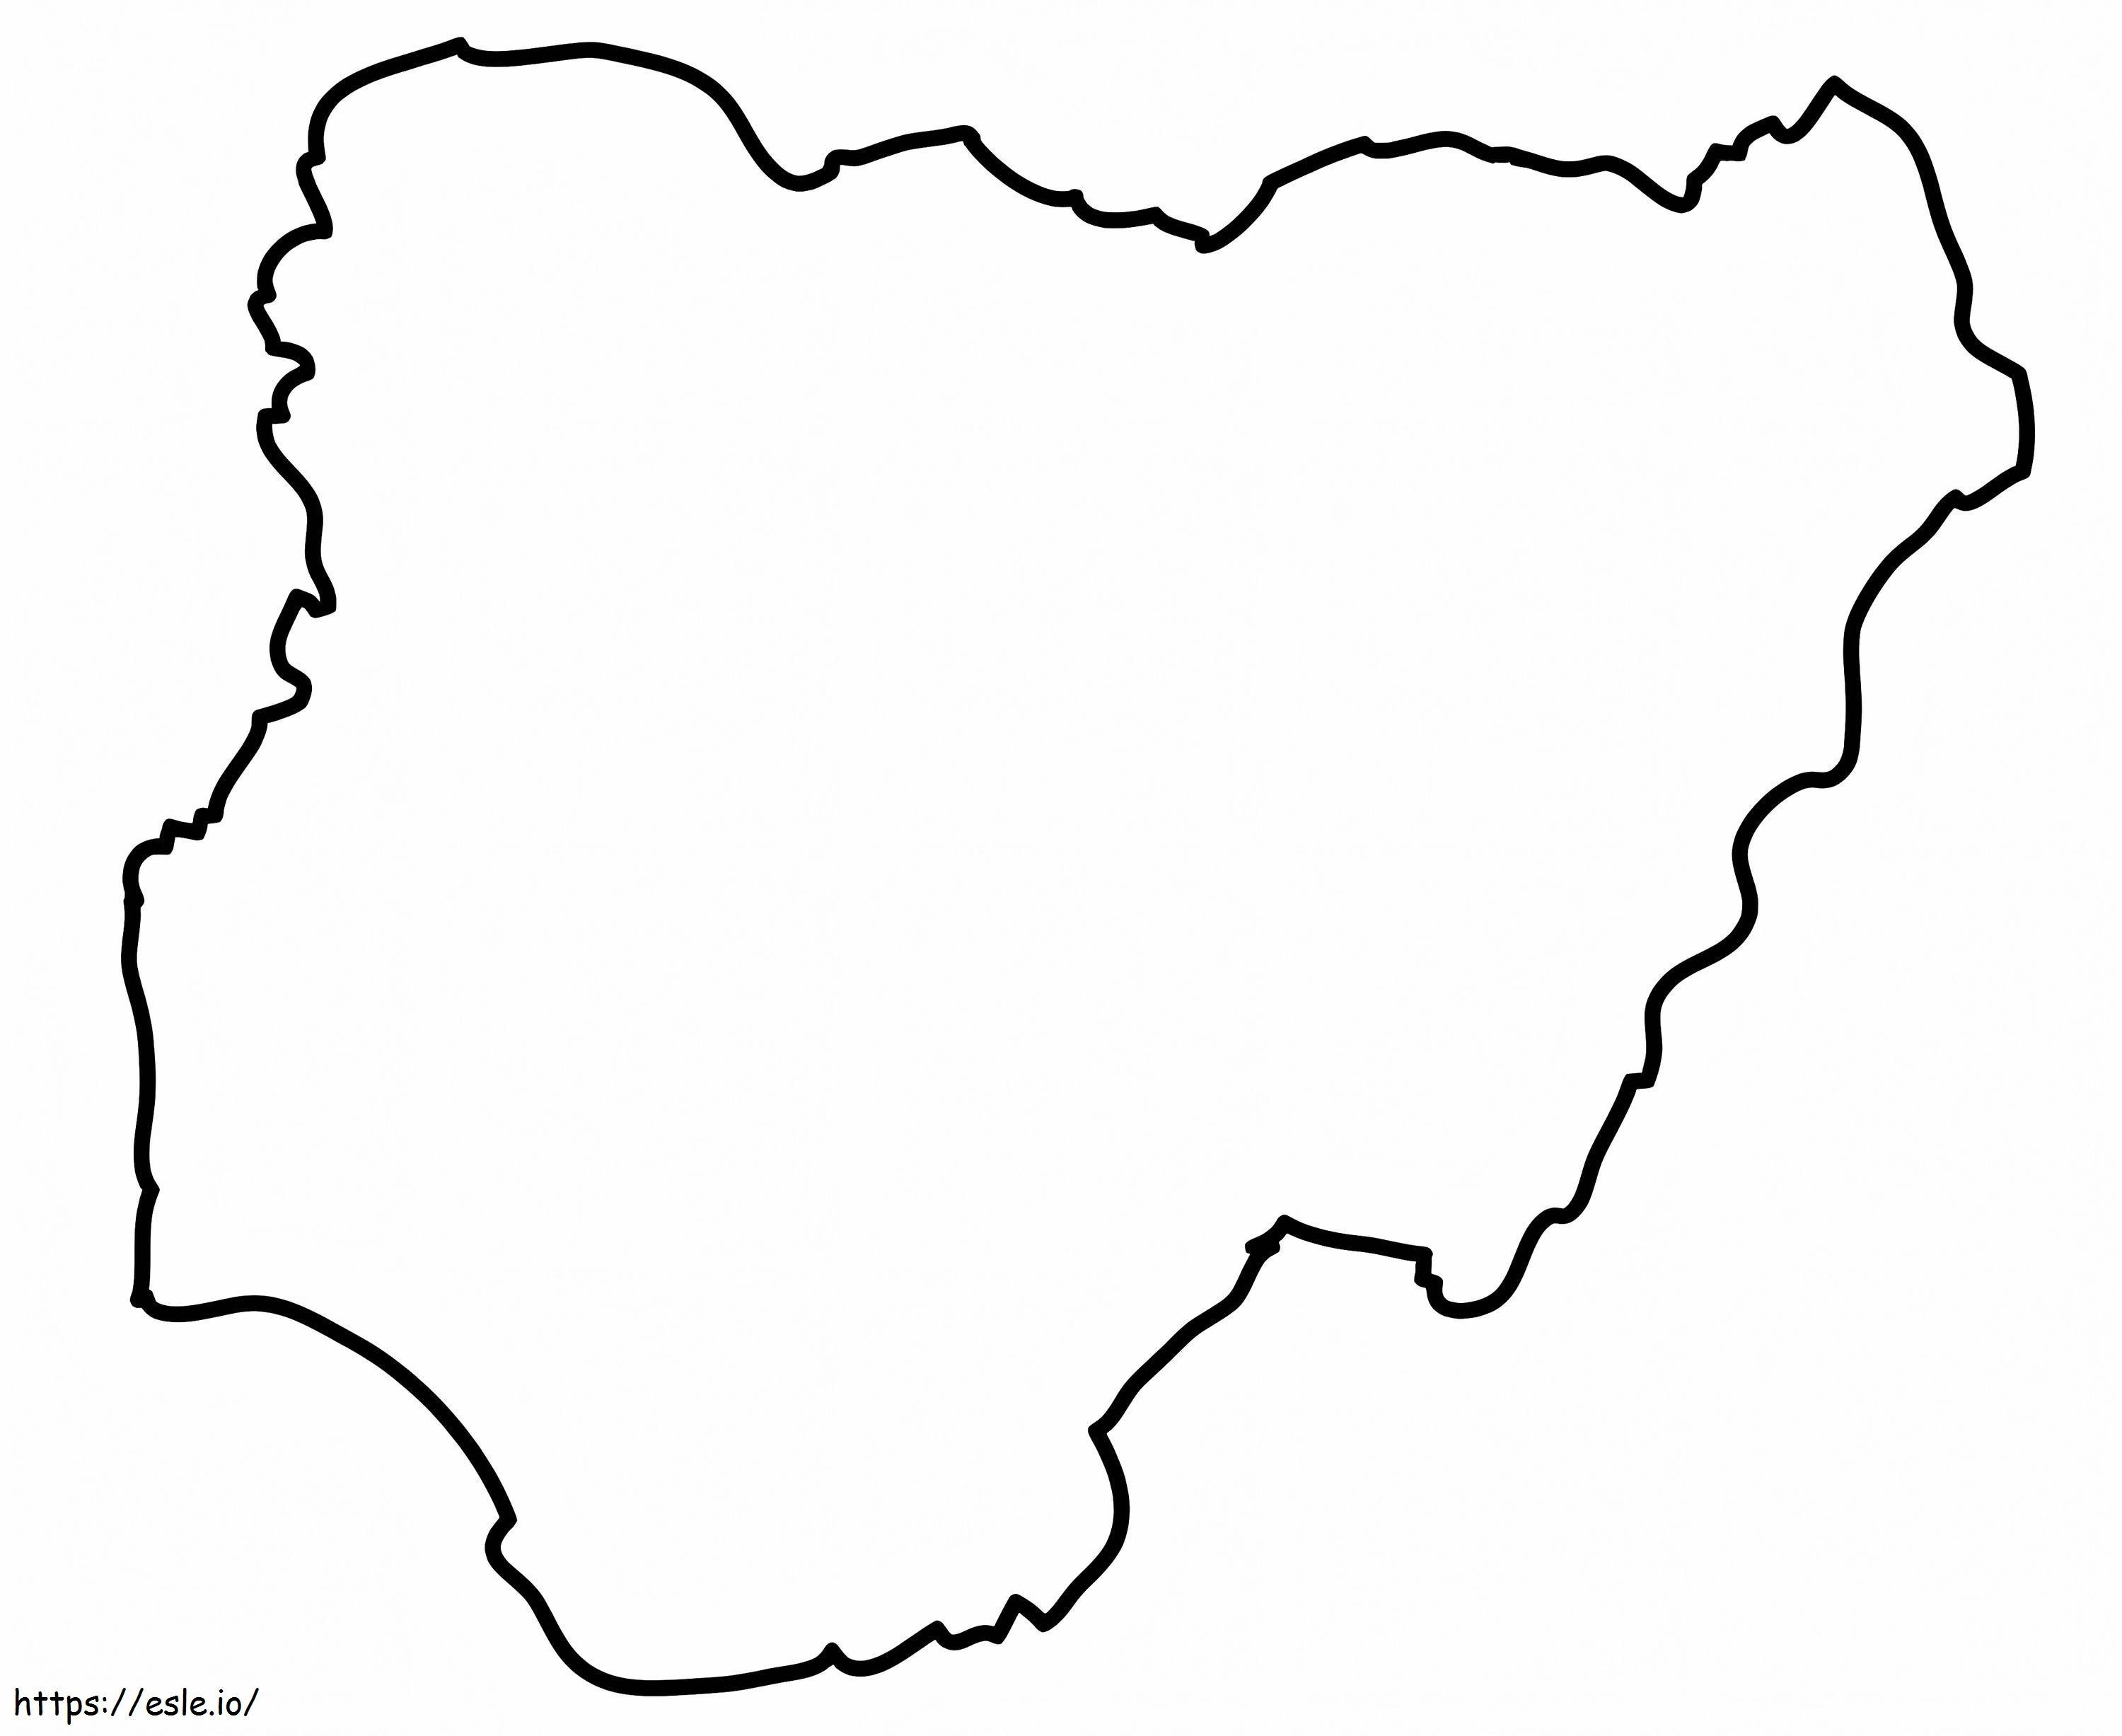 Nigéria vázlatos térképe kifestő